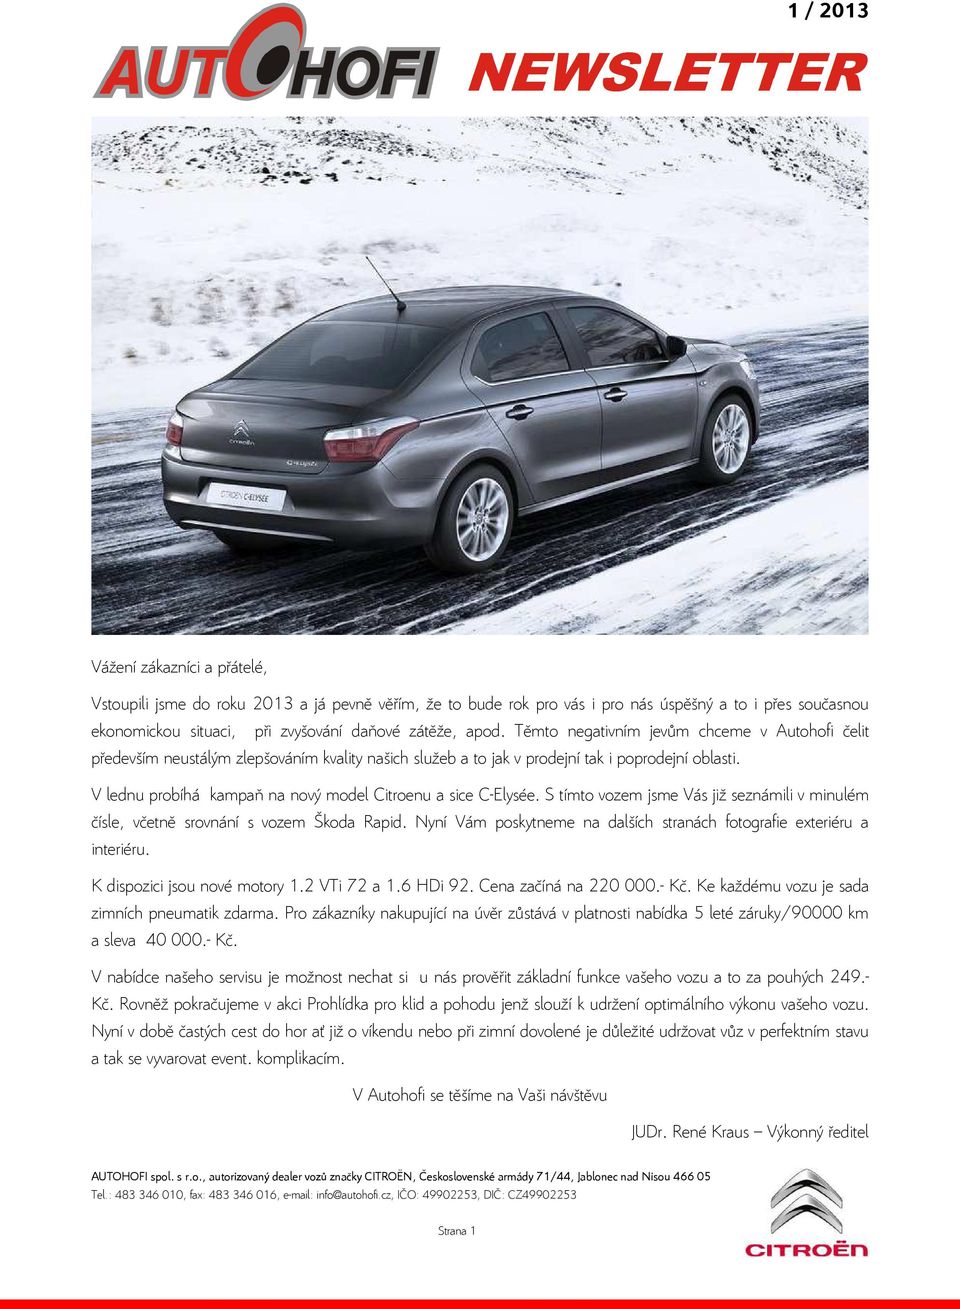 V lednu probíhá kampaň na nový model Citroenu a sice C-Elysée. S tímto vozem jsme Vás již seznámili v minulém čísle, včetně srovnání s vozem Škoda Rapid.